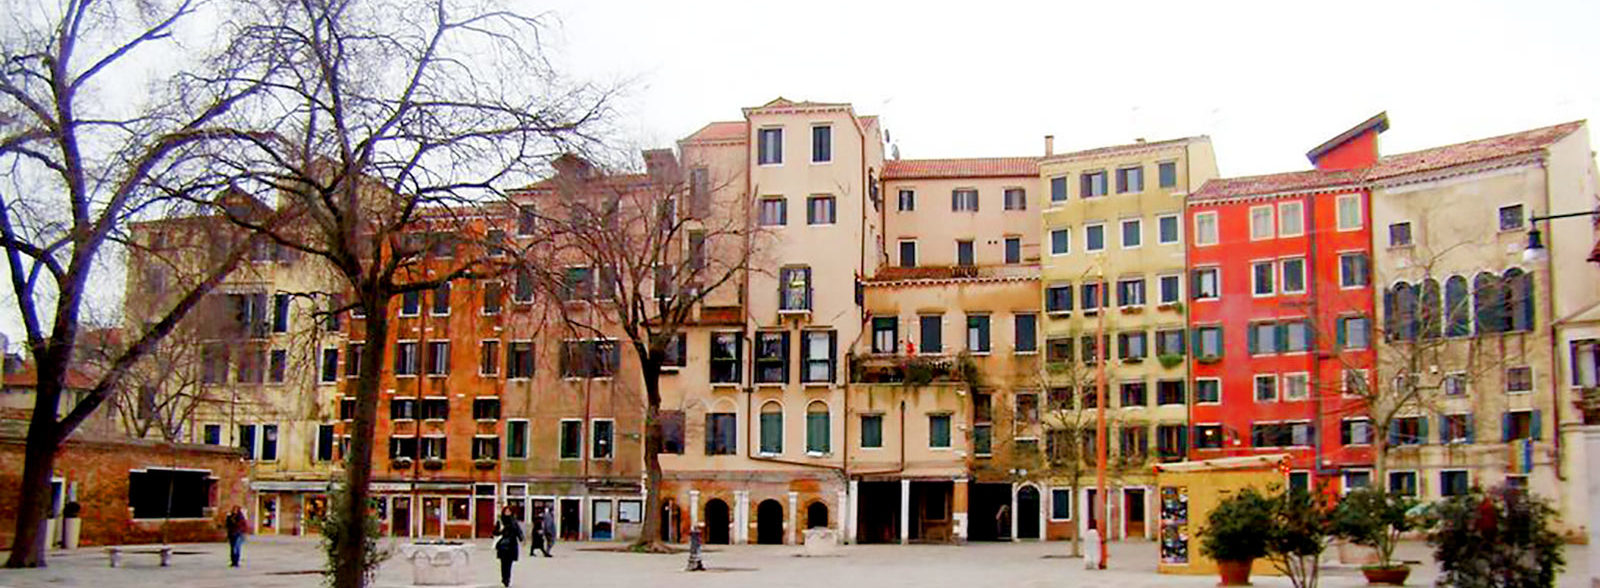 Il ghetto Ebraico di Venezia: alla scoperta di un quartiere affascinante